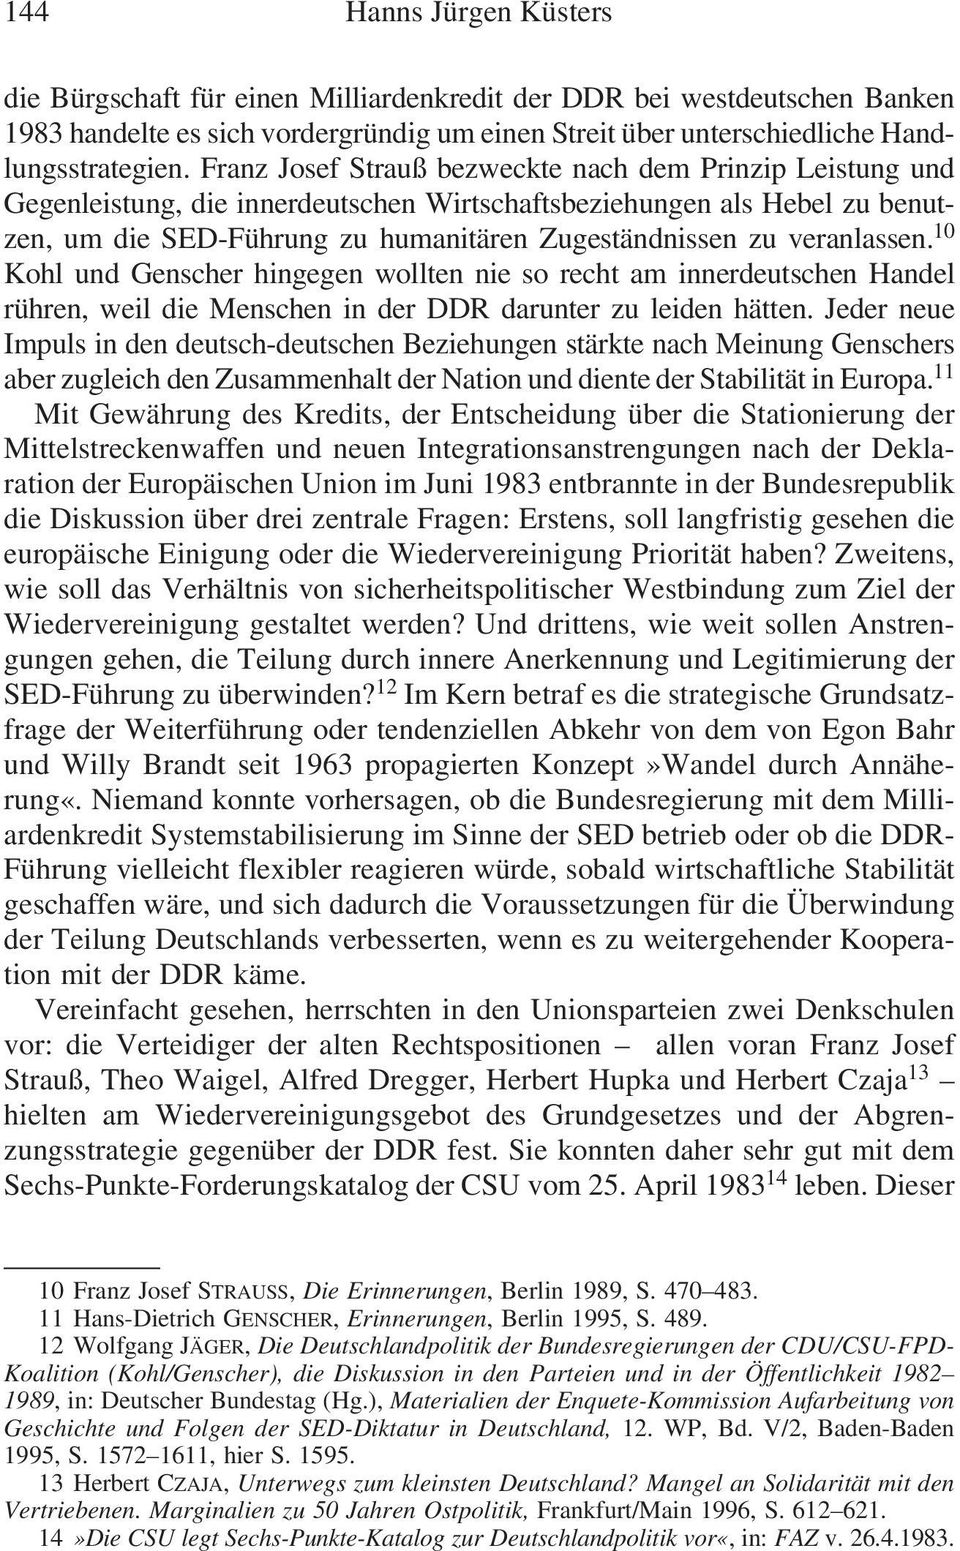 Franz Josef Strauß bezweckte nach dem Prinzip Leistung und Gegenleistung, die innerdeutschen Wirtschaftsbeziehungen als Hebel zu benutzen, um die SED-Führung zu humanitären Zugeständnissen zu